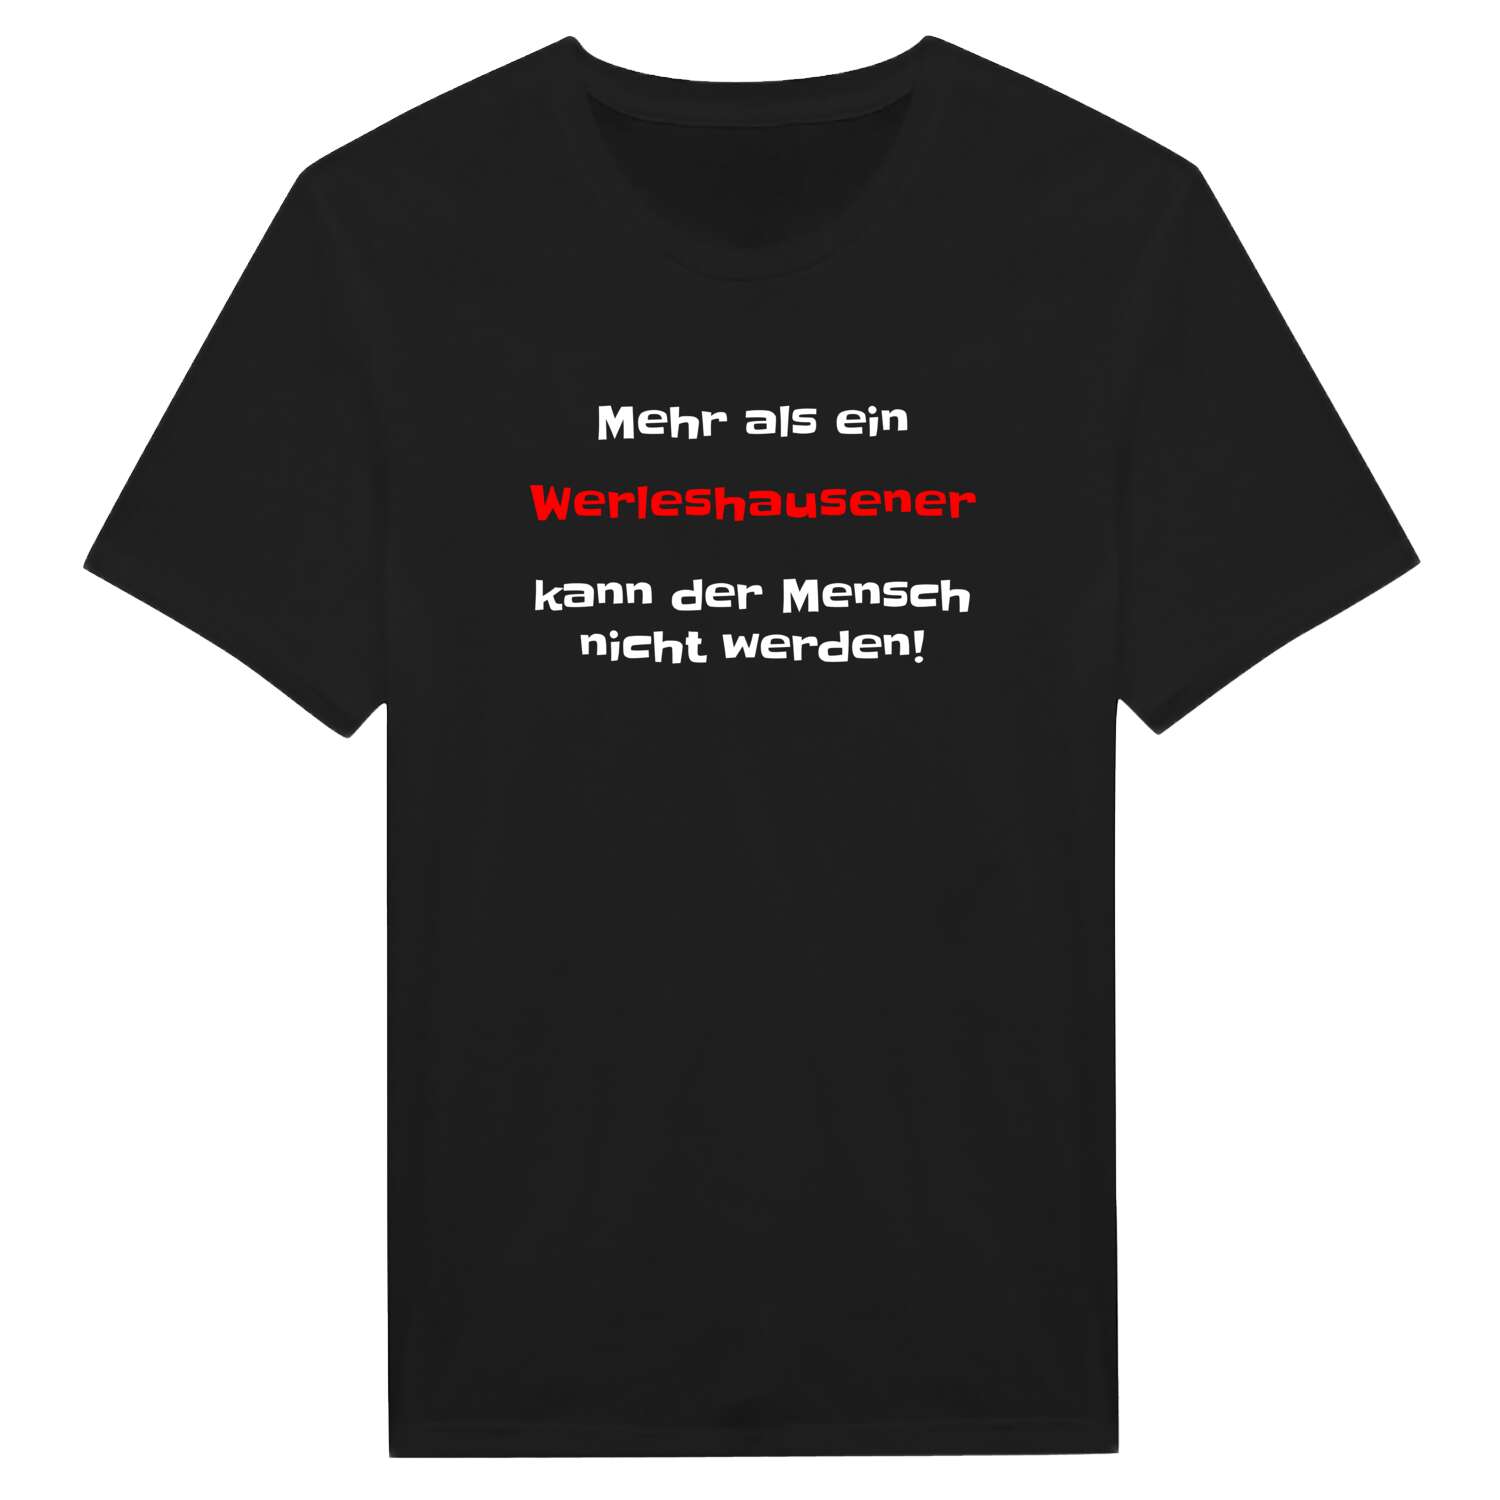 Werleshausen T-Shirt »Mehr als ein«